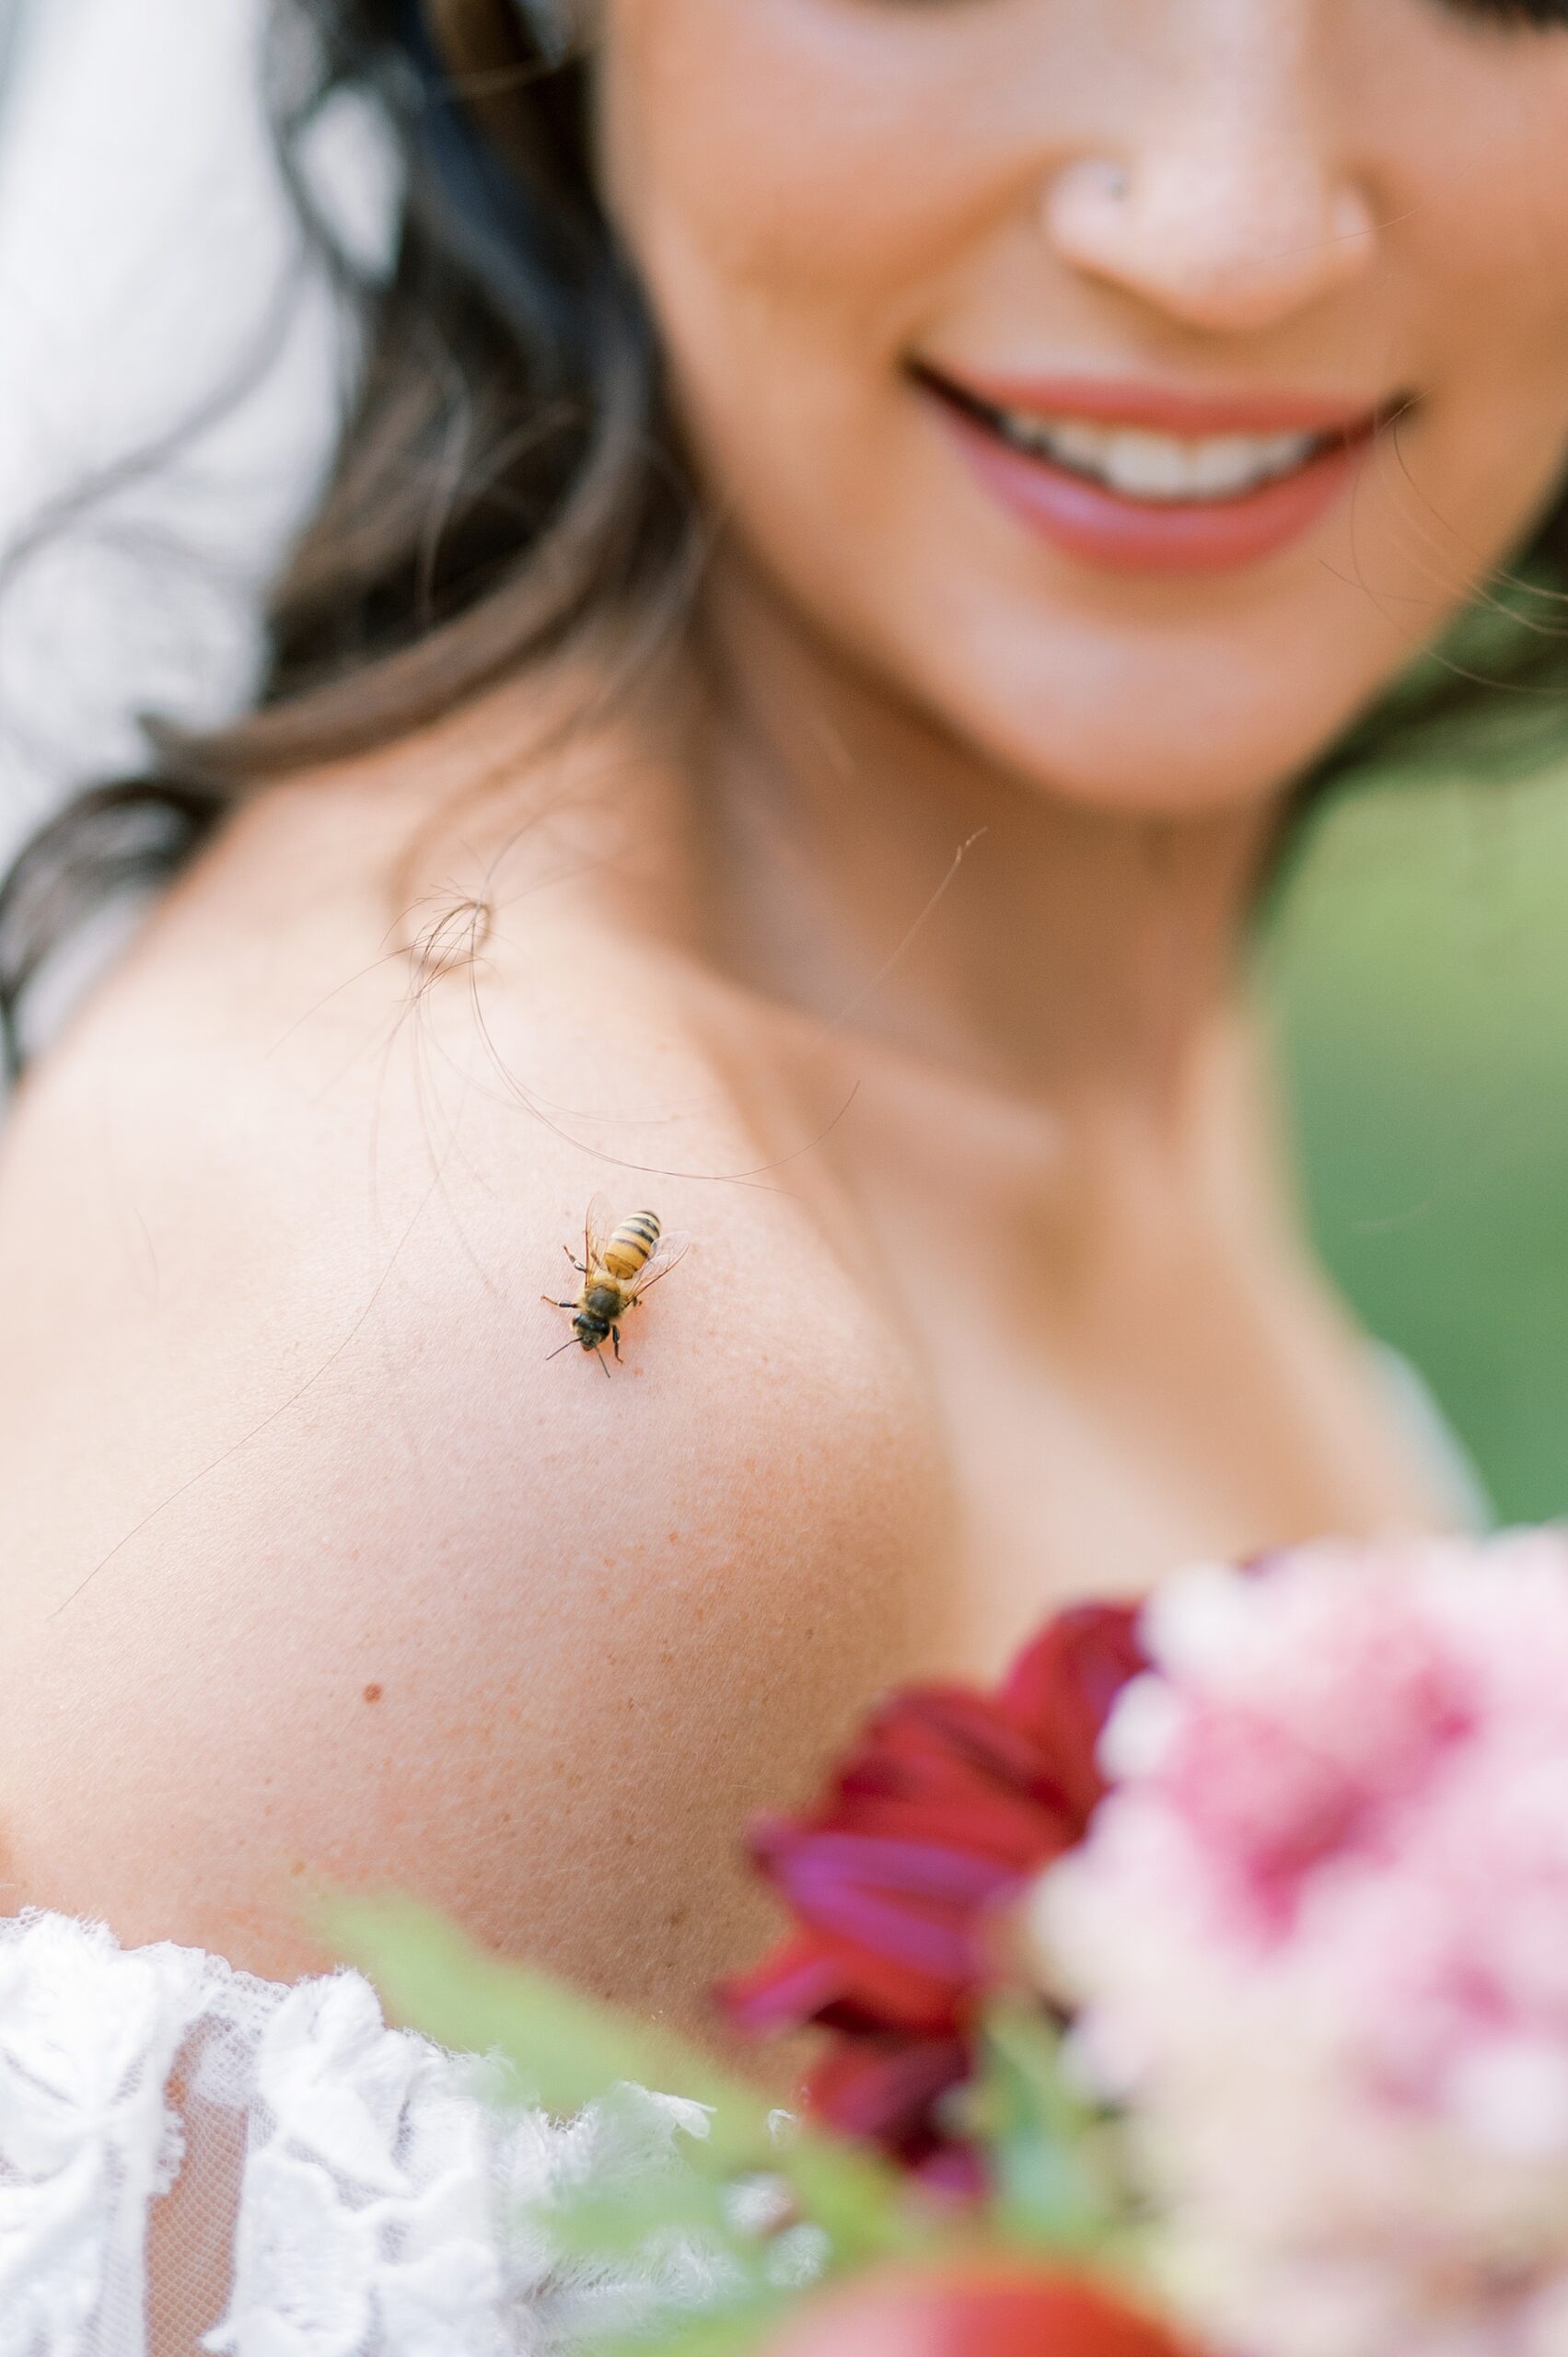 honeybee lands on bride's shoulder